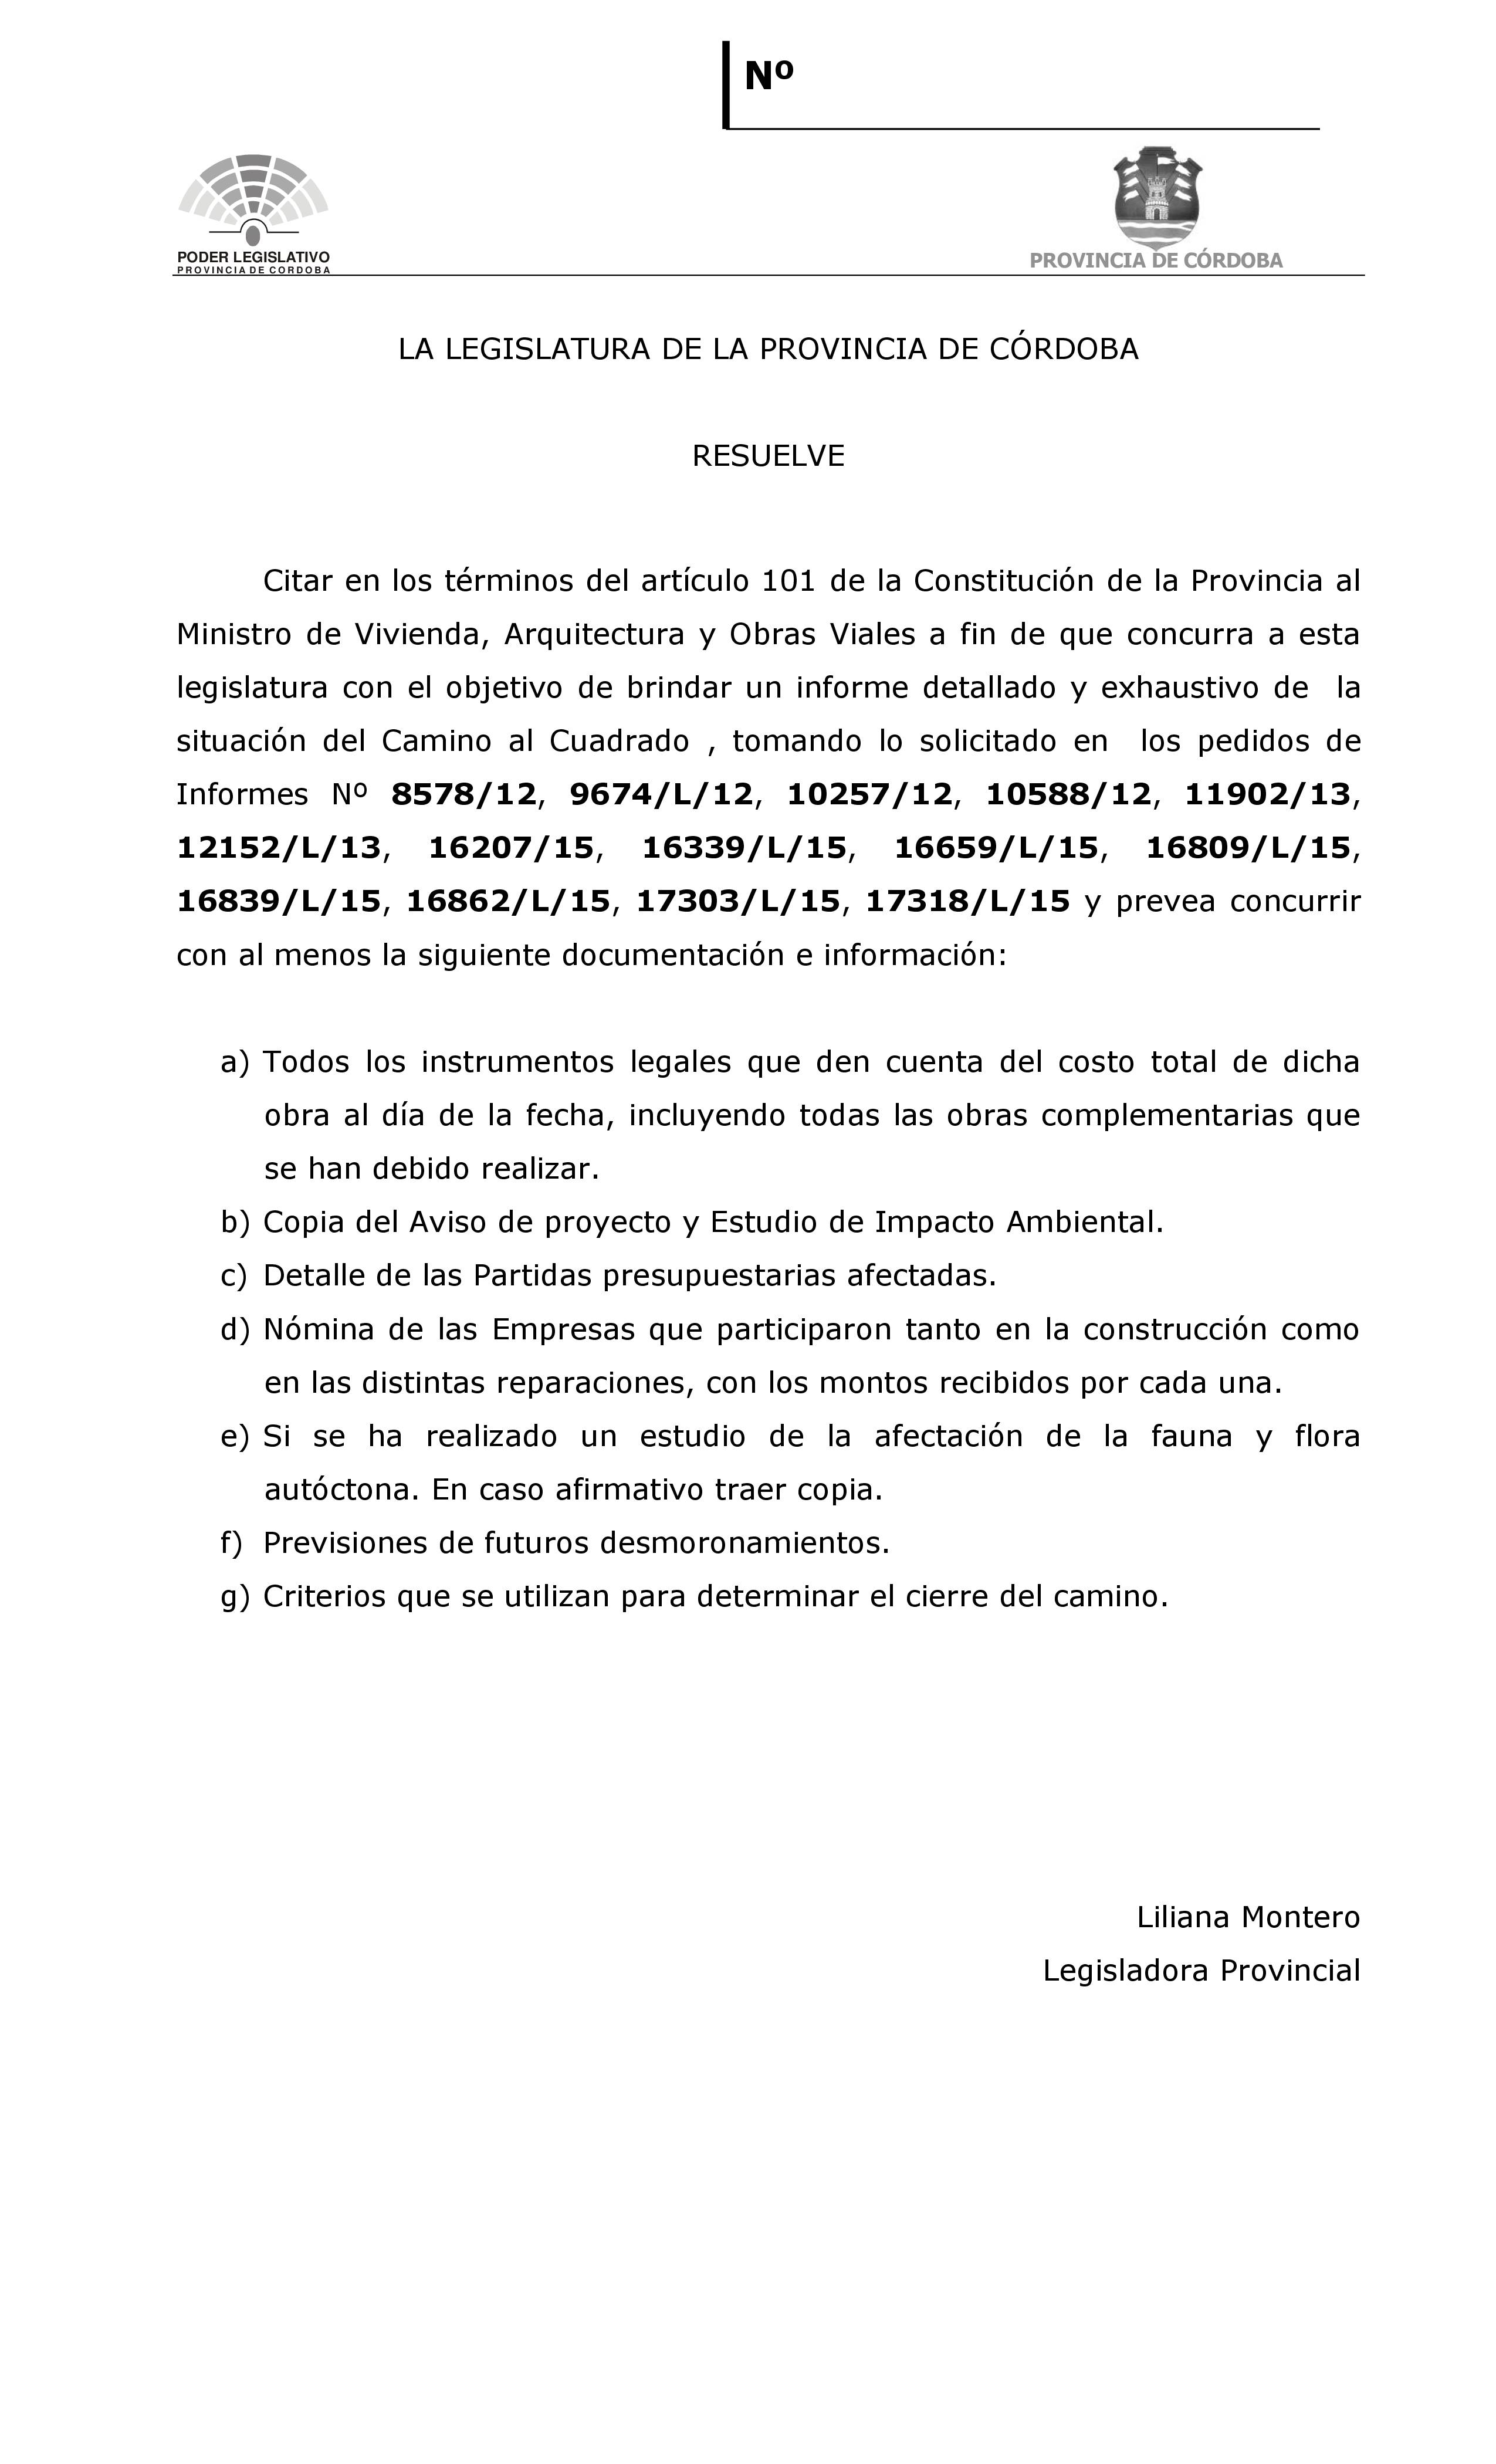 Proyecto_de_Resolución-_citación_ministro-_Camino_del_Cuadrado-1.jpg